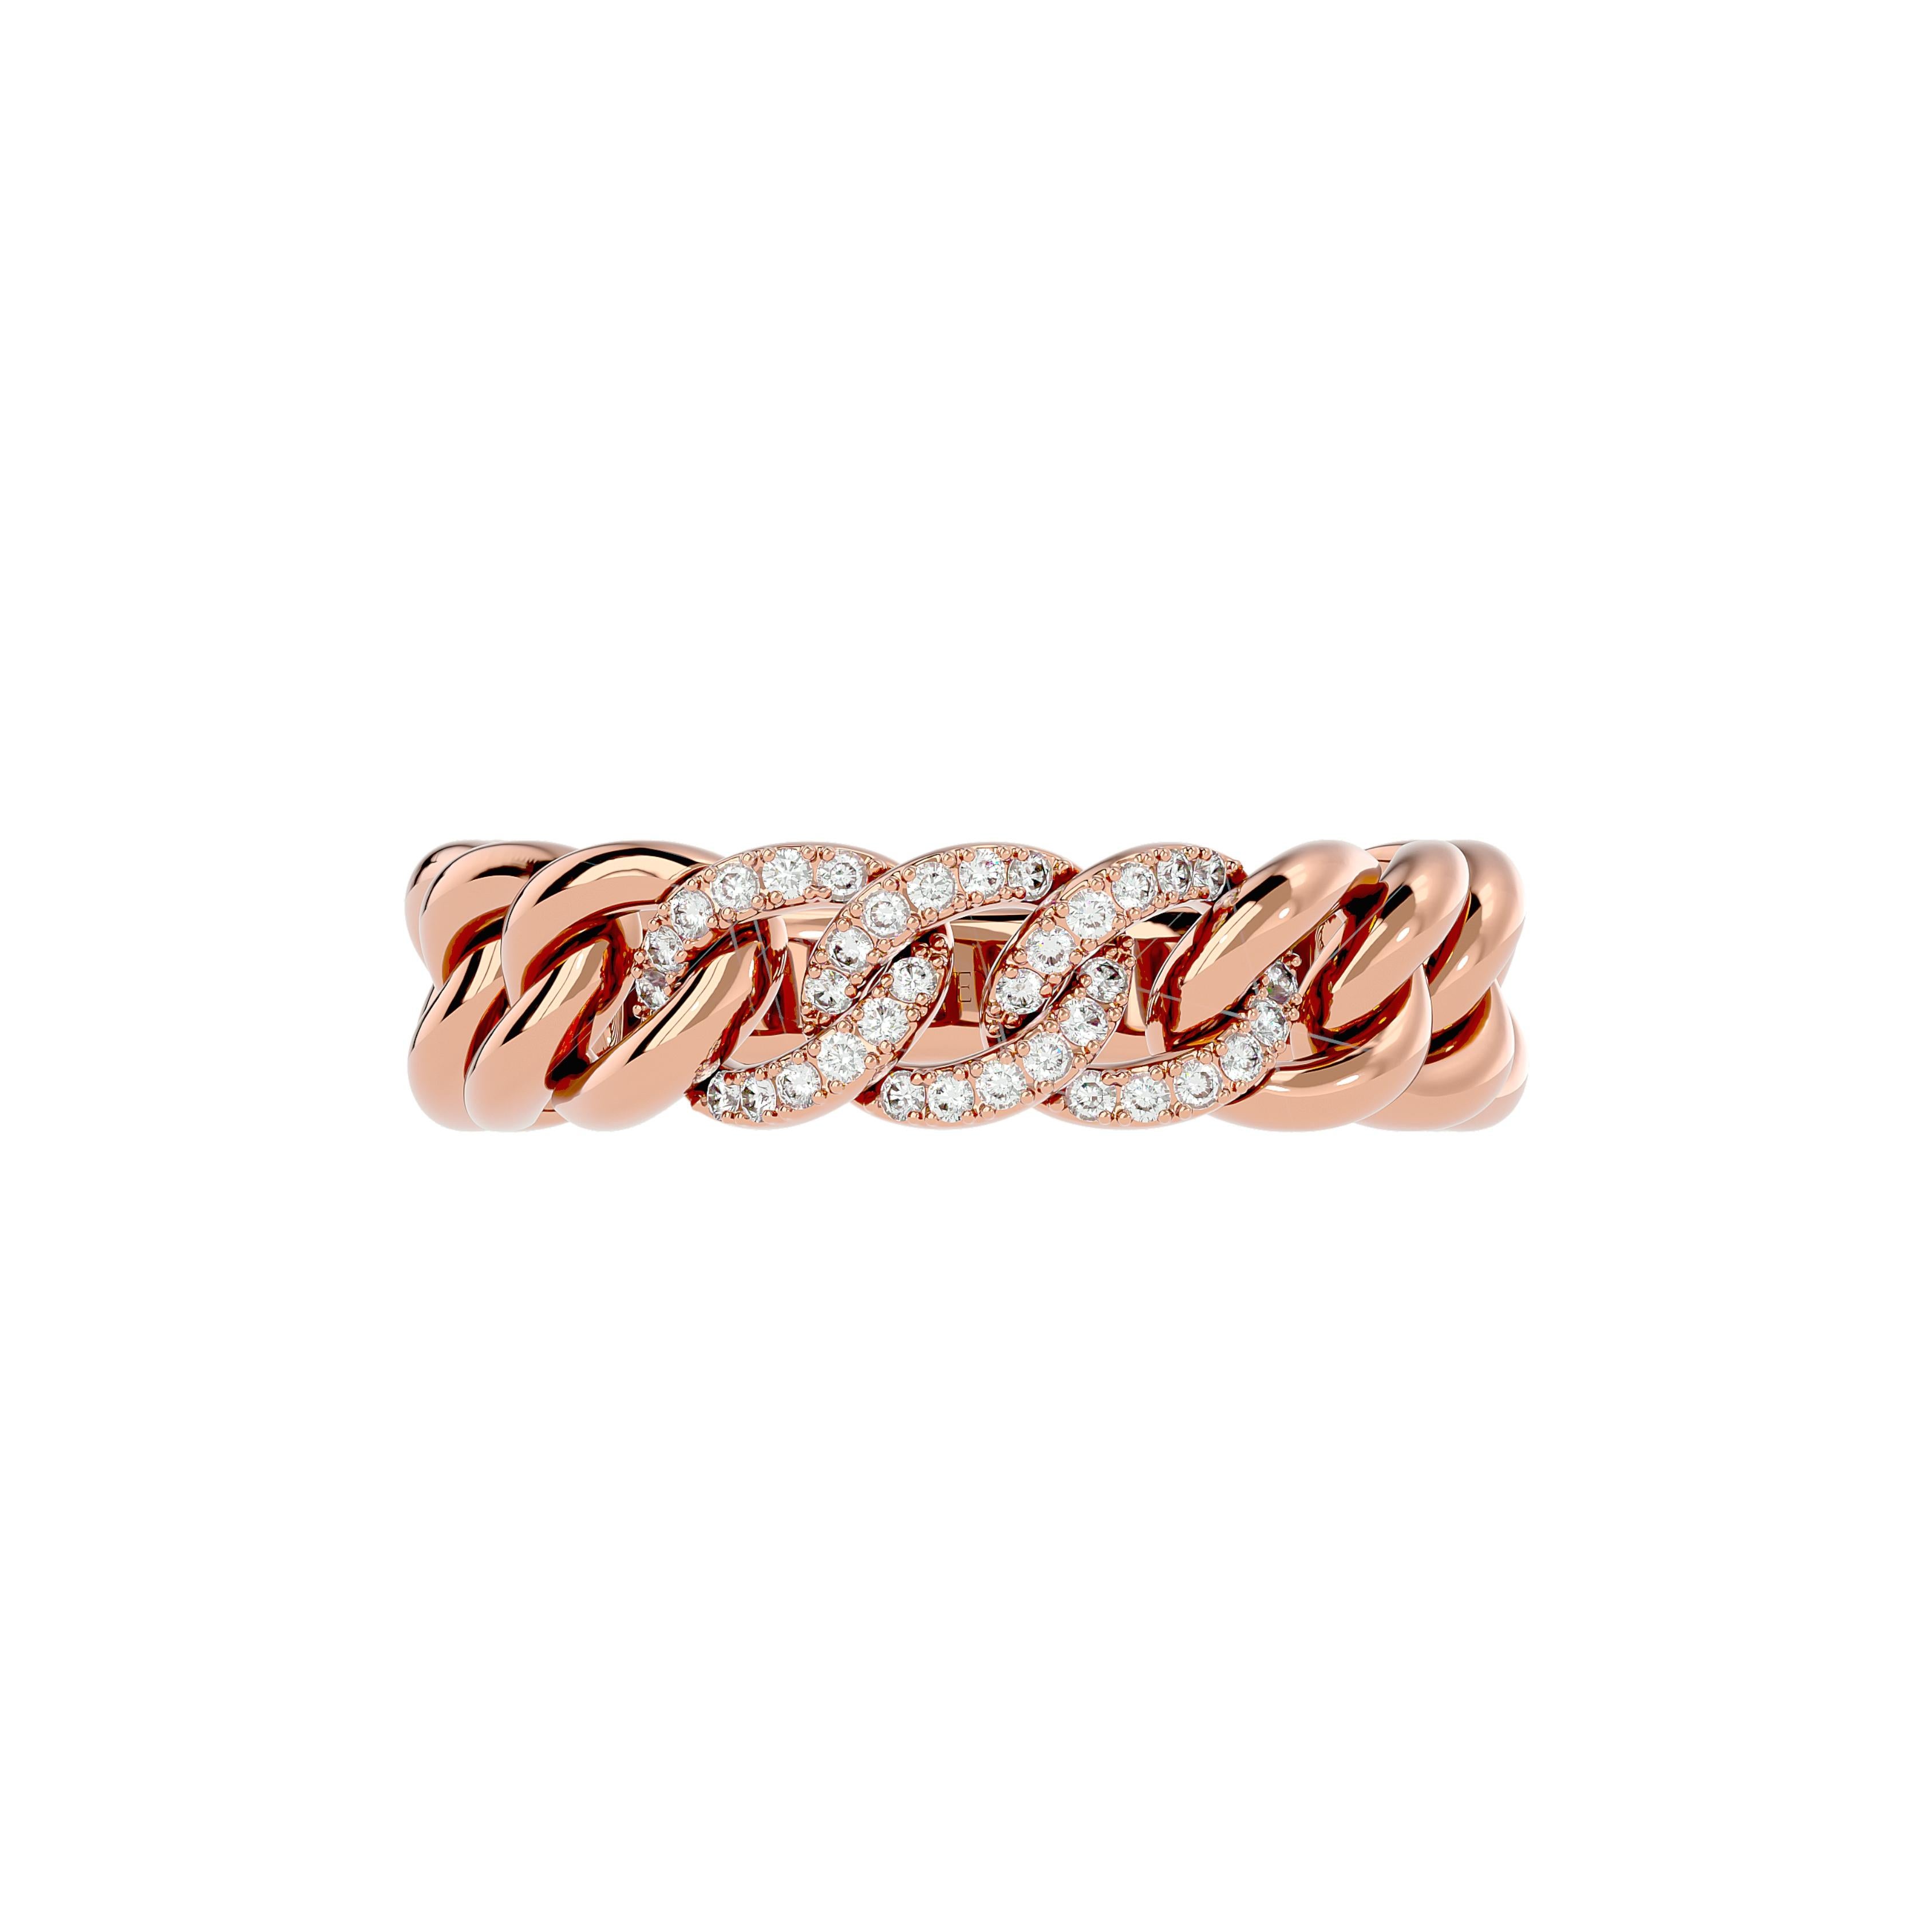 Elemente
Der Ketten-Diamantring ist eine moderne Interpretation eines klassischen Designs. Dieser aus Gold und Diamanten handgefertigte Ring verleiht all Ihren Looks einen Hauch von Luxus.

Innovation
Wir alle kennen dieses Gefühl der Verbundenheit